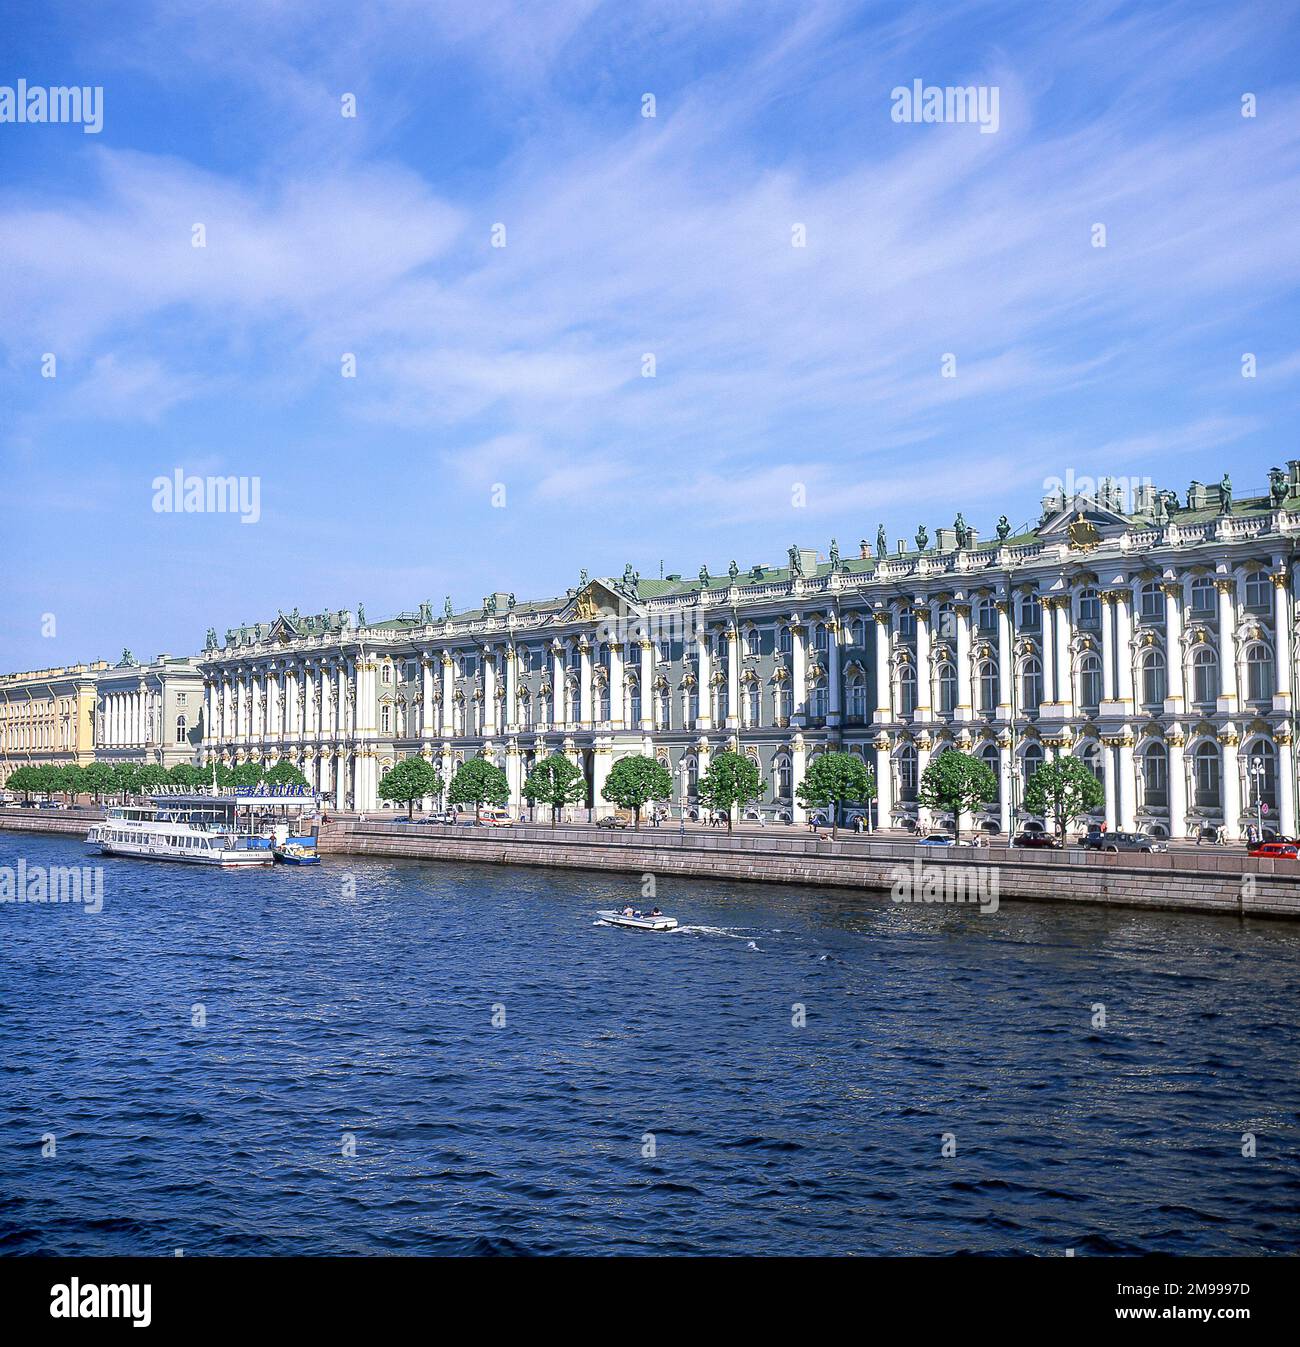 18th Century State Hermitage Museum de l'autre côté de la rivière Niva, Saint-Pétersbourg, région du Nord-Ouest, Fédération de Russie Banque D'Images